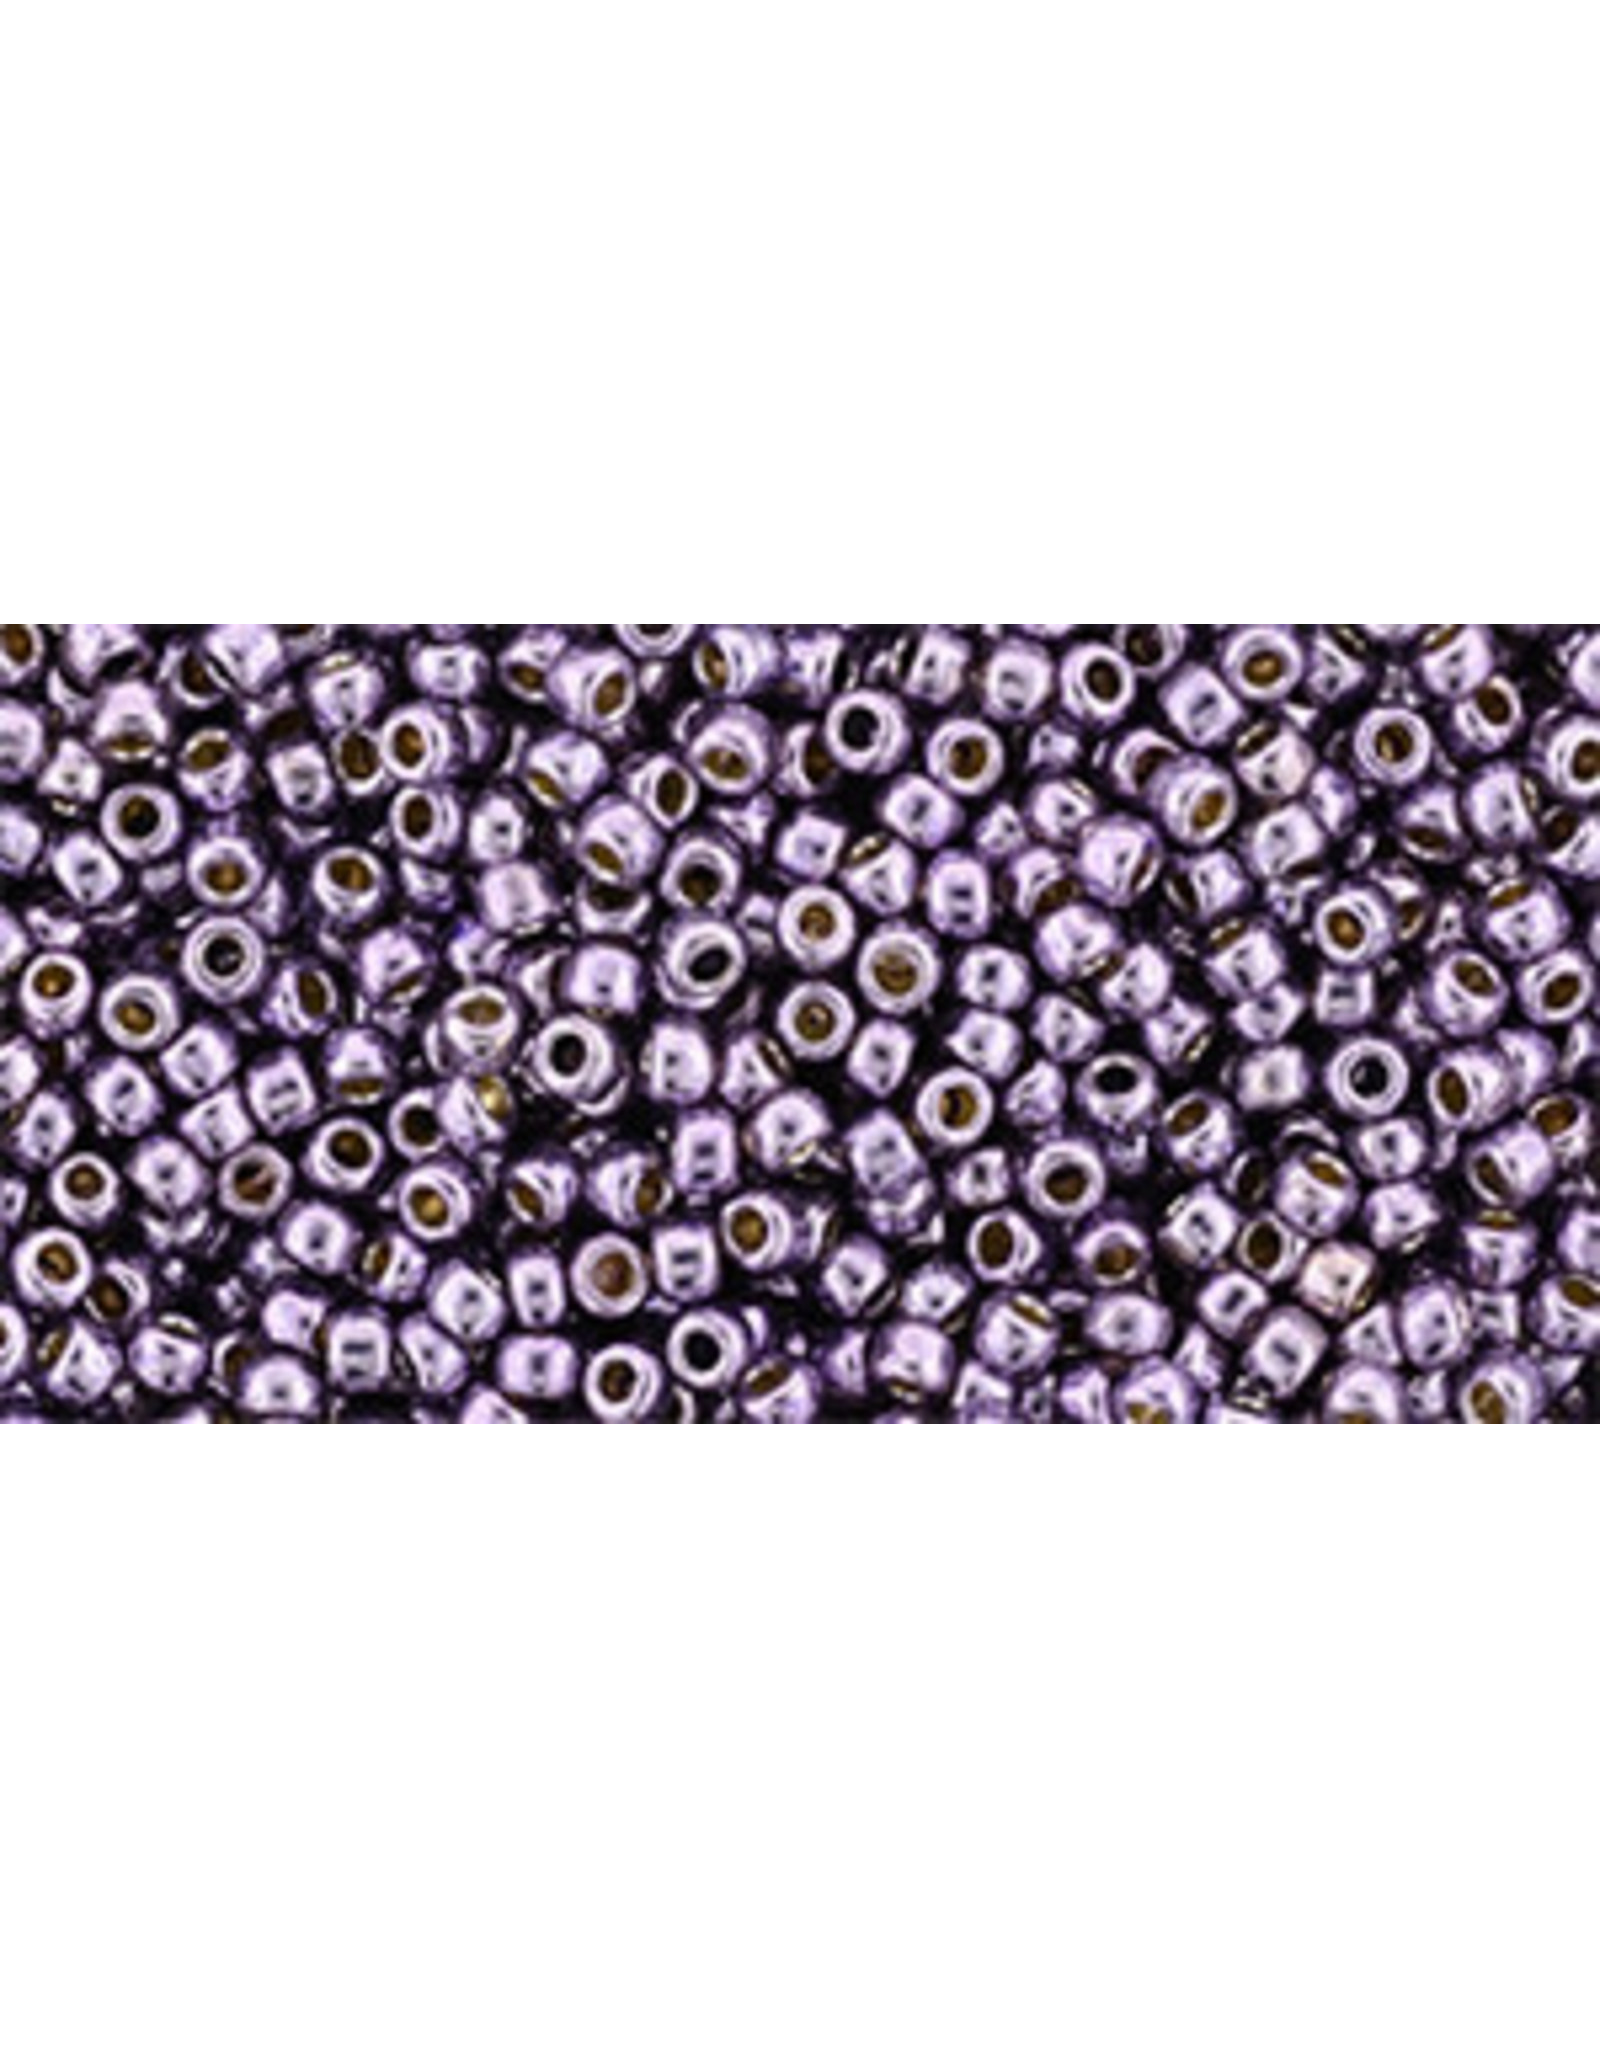 Toho pf579  11  Round 6g  Pale Lilac Metallic Matte Perma-Finish